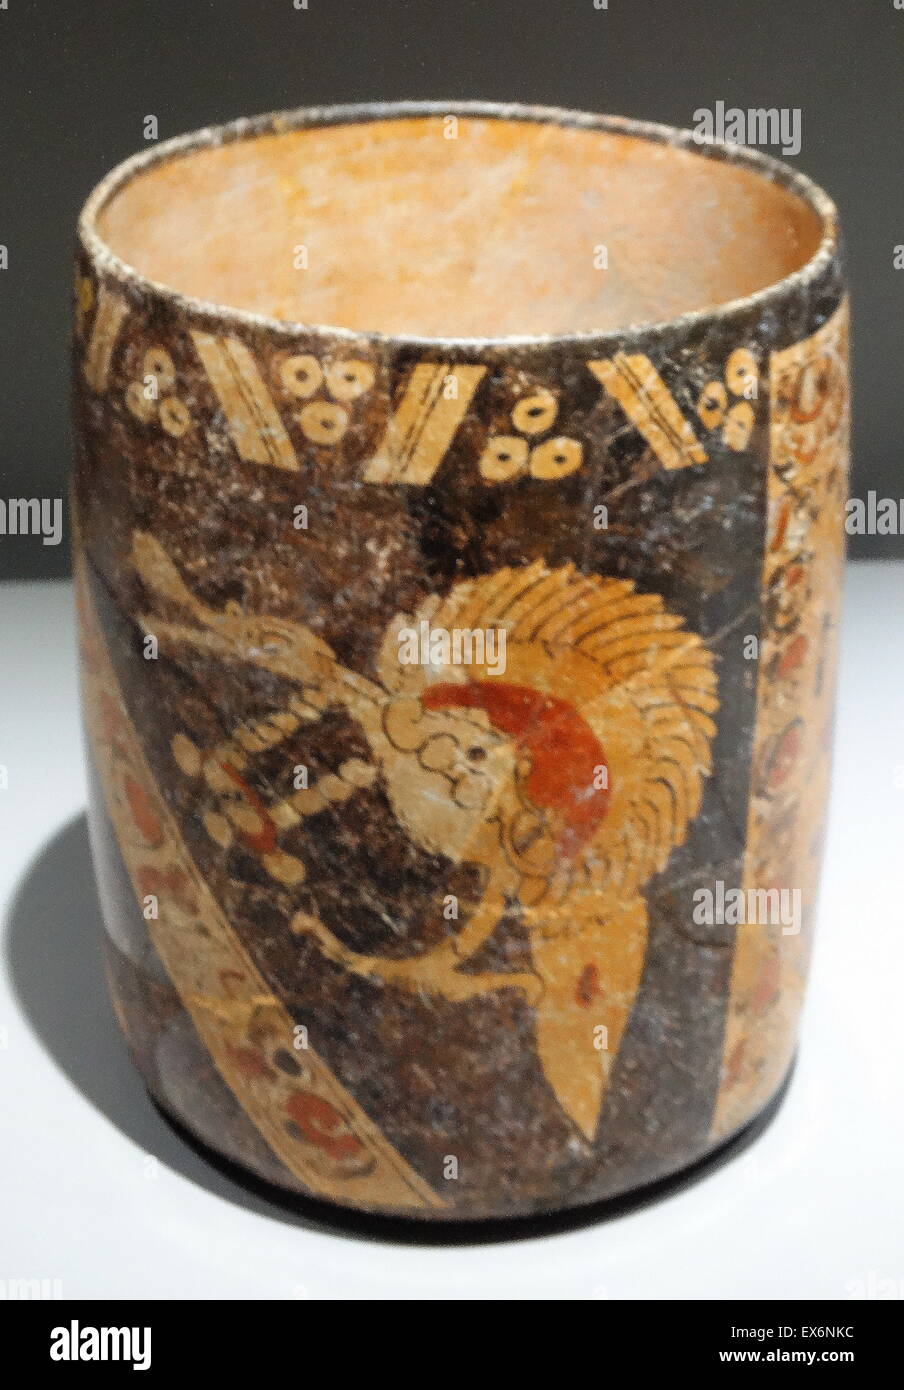 Geraden Wänden polychrome Vase, eine doppelstufige auf hellen und dunklen Hintergrund darstellt. Der dunkle Hintergrund enthält eine Darstellung eines Vogels während der Licht-Shows einen männlichen Charakter Reich gekleidet und stehen neben einer Spalte und eine Bande von dekorativen Stockfoto